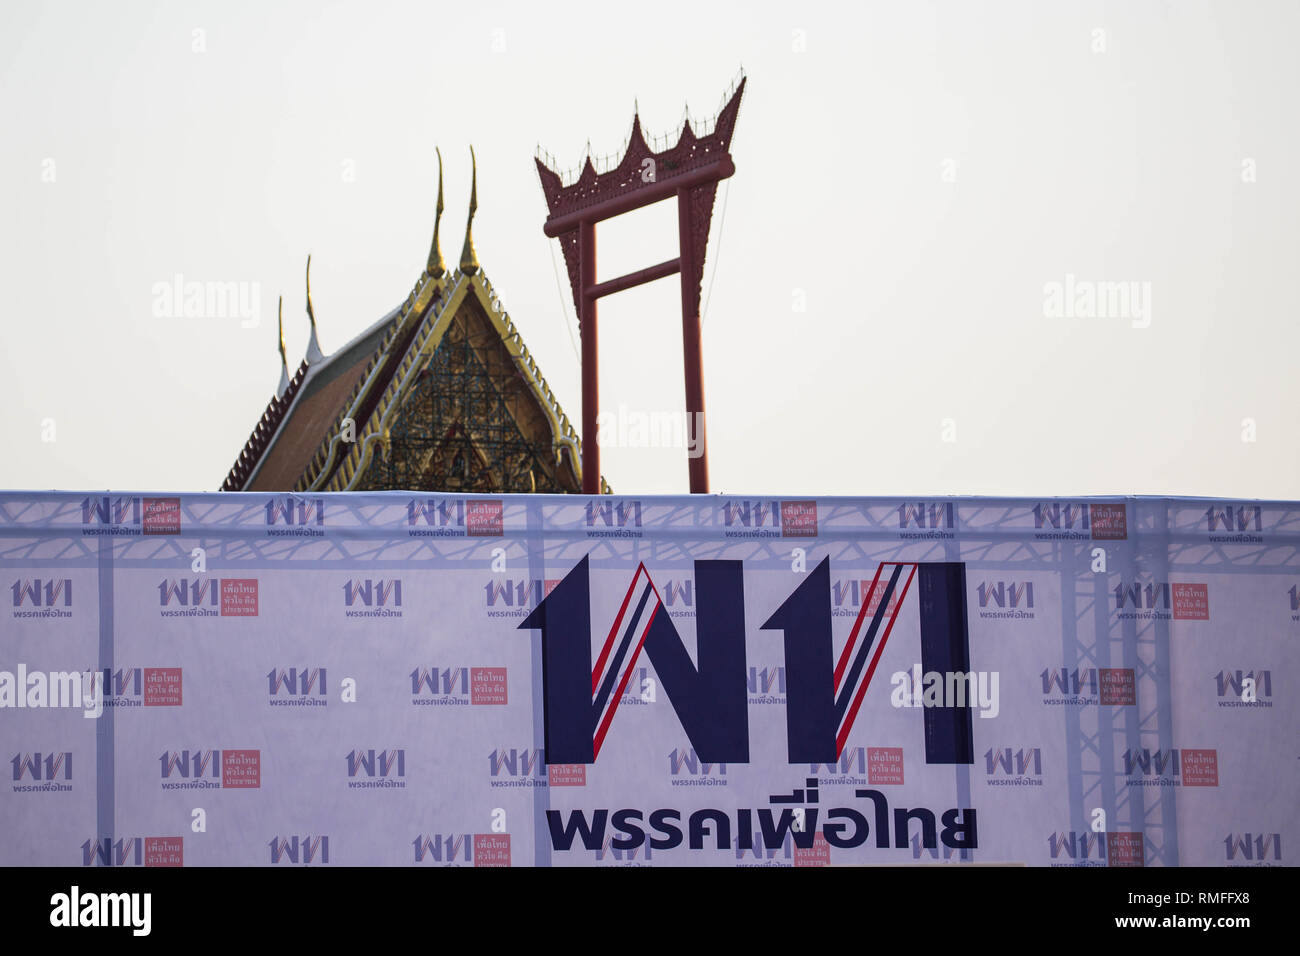 Bangkok, Tailandia. 15 Feb, 2019. El logotipo del partido Pheu Thai visto con el Chinatown Gate y el Wat Suthat Thepwararam Templo en el fondo durante un mitin del Partido Pheu Thai por delante de los 2019 elección general tailandés.Tailandia celebrará las elecciones generales el 24 de marzo de 2019, que será el primer sondeo desde cinco años después del golpe militar de mayo de 2014 por Prayut Chan-o-cha. Crédito: Guillaume Payen SOPA/Images/Zuma alambre/Alamy Live News Foto de stock